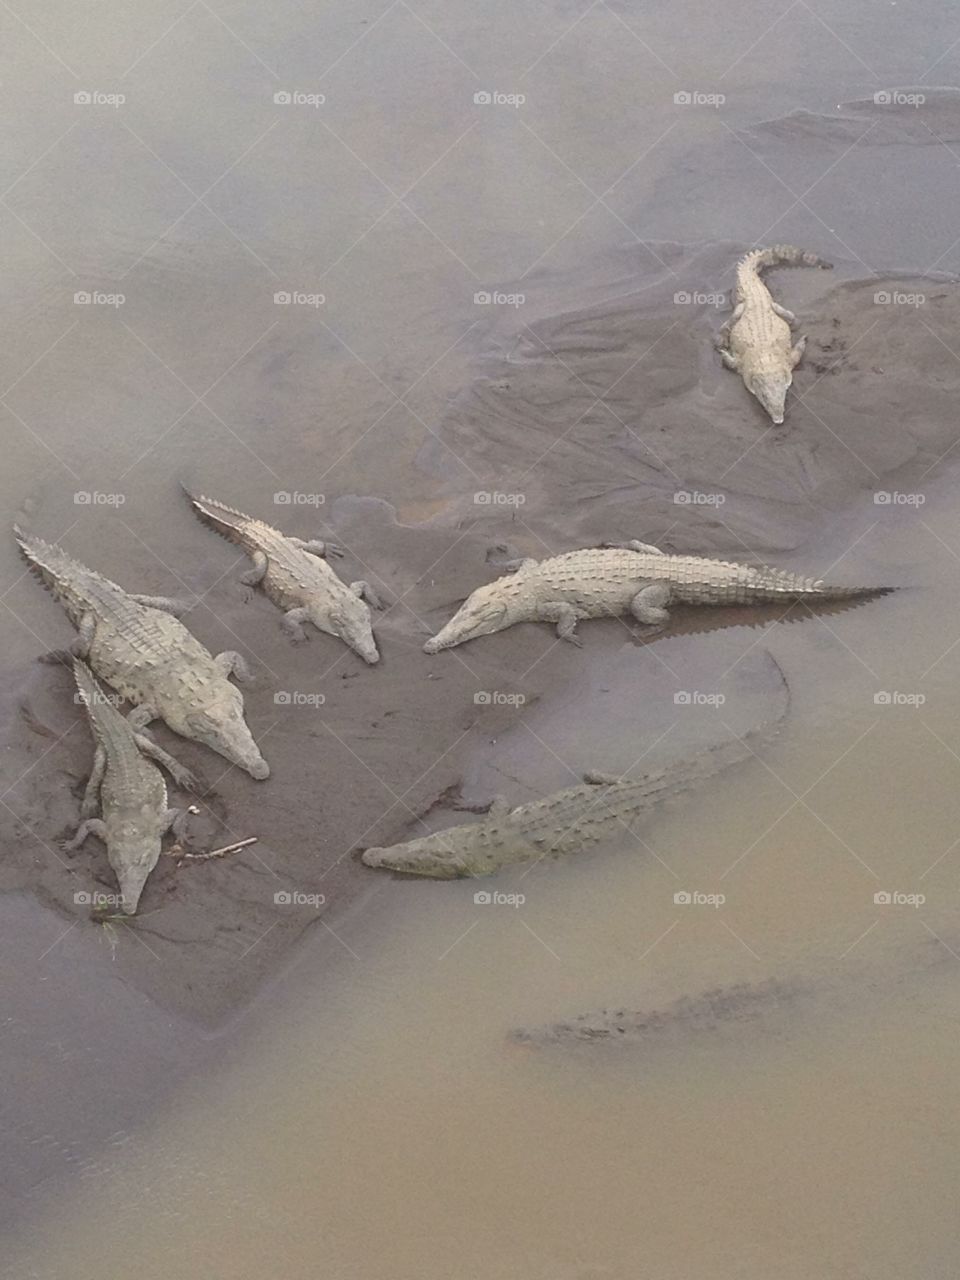 Crocodiles in Costa Rica 